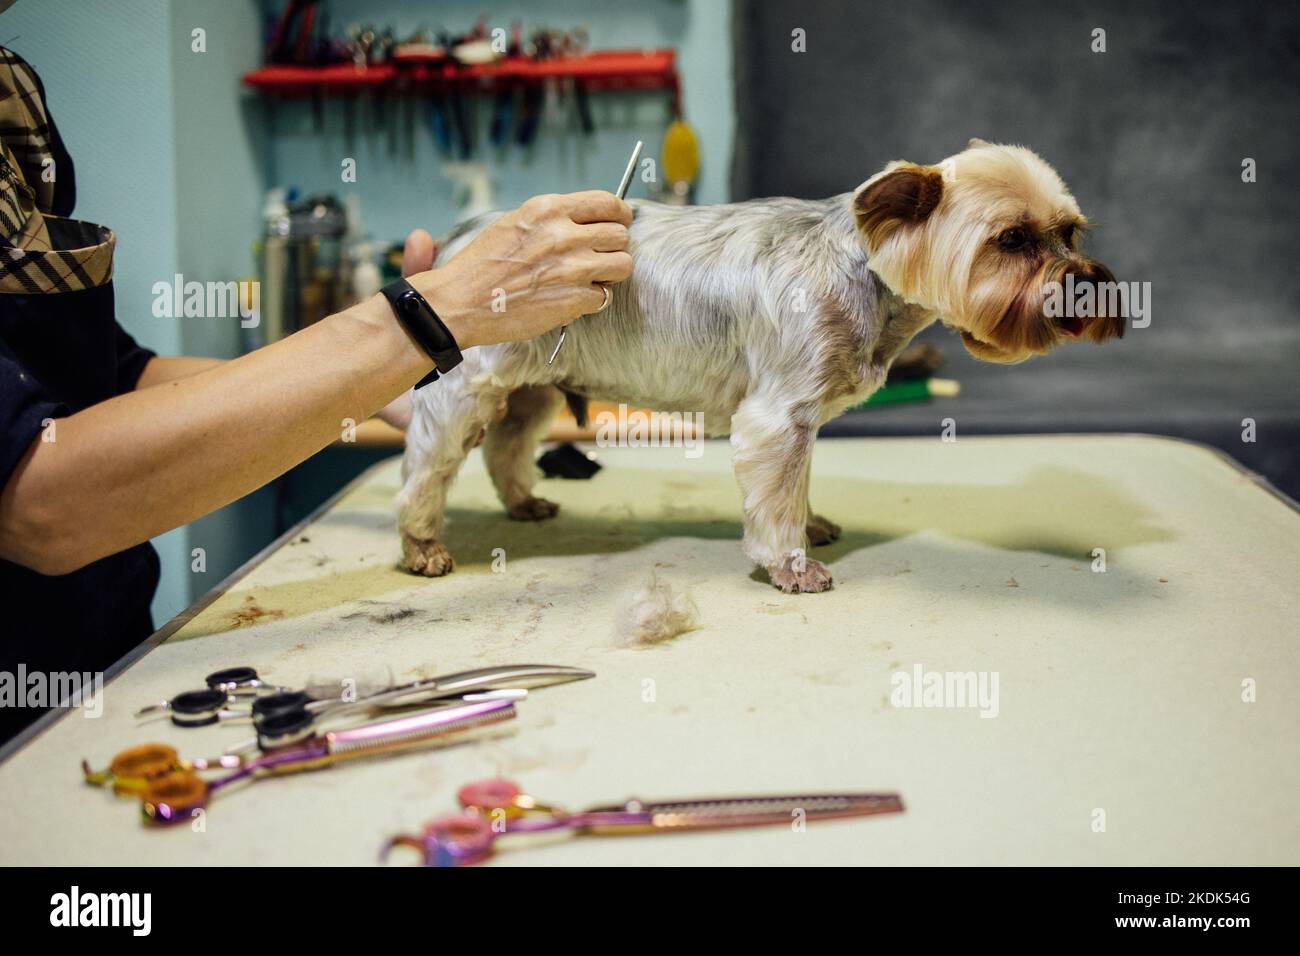 Donna groomer che taglia e pettina il cane al salone di grooming. Concetto di cura professionale degli animali domestici. Foto di alta qualità Foto Stock